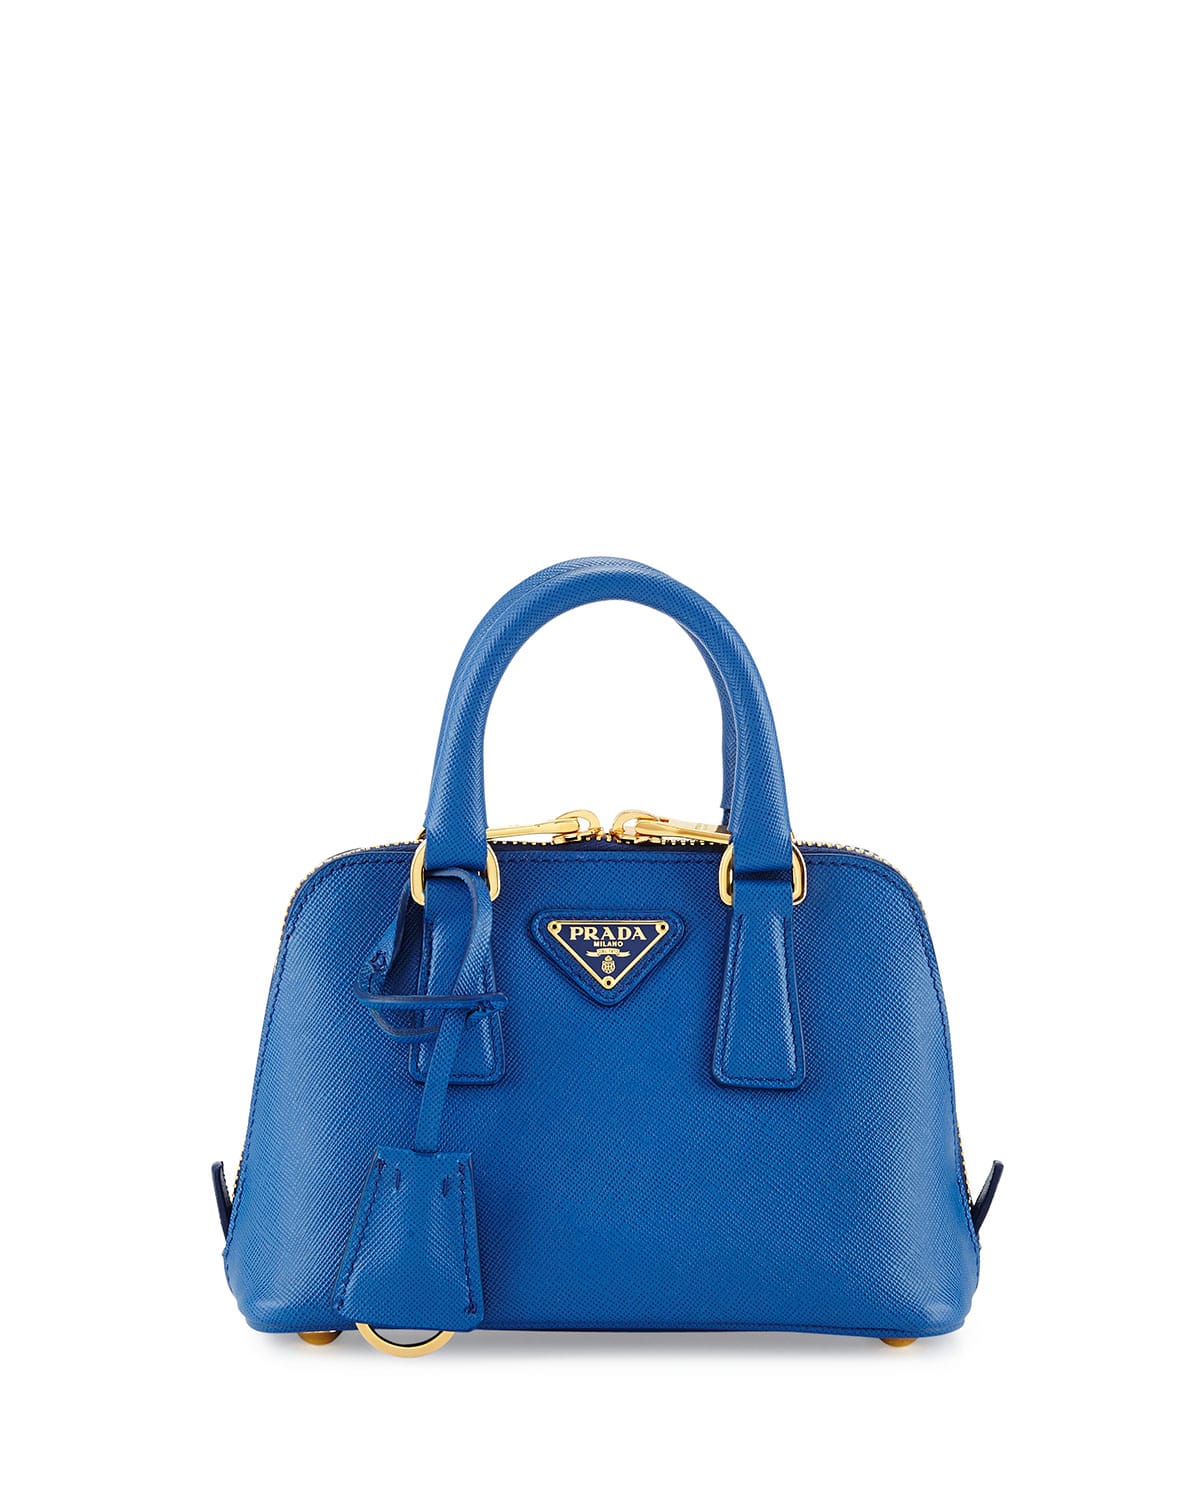 Prada Saffiano Leather Mini Bag - Blue